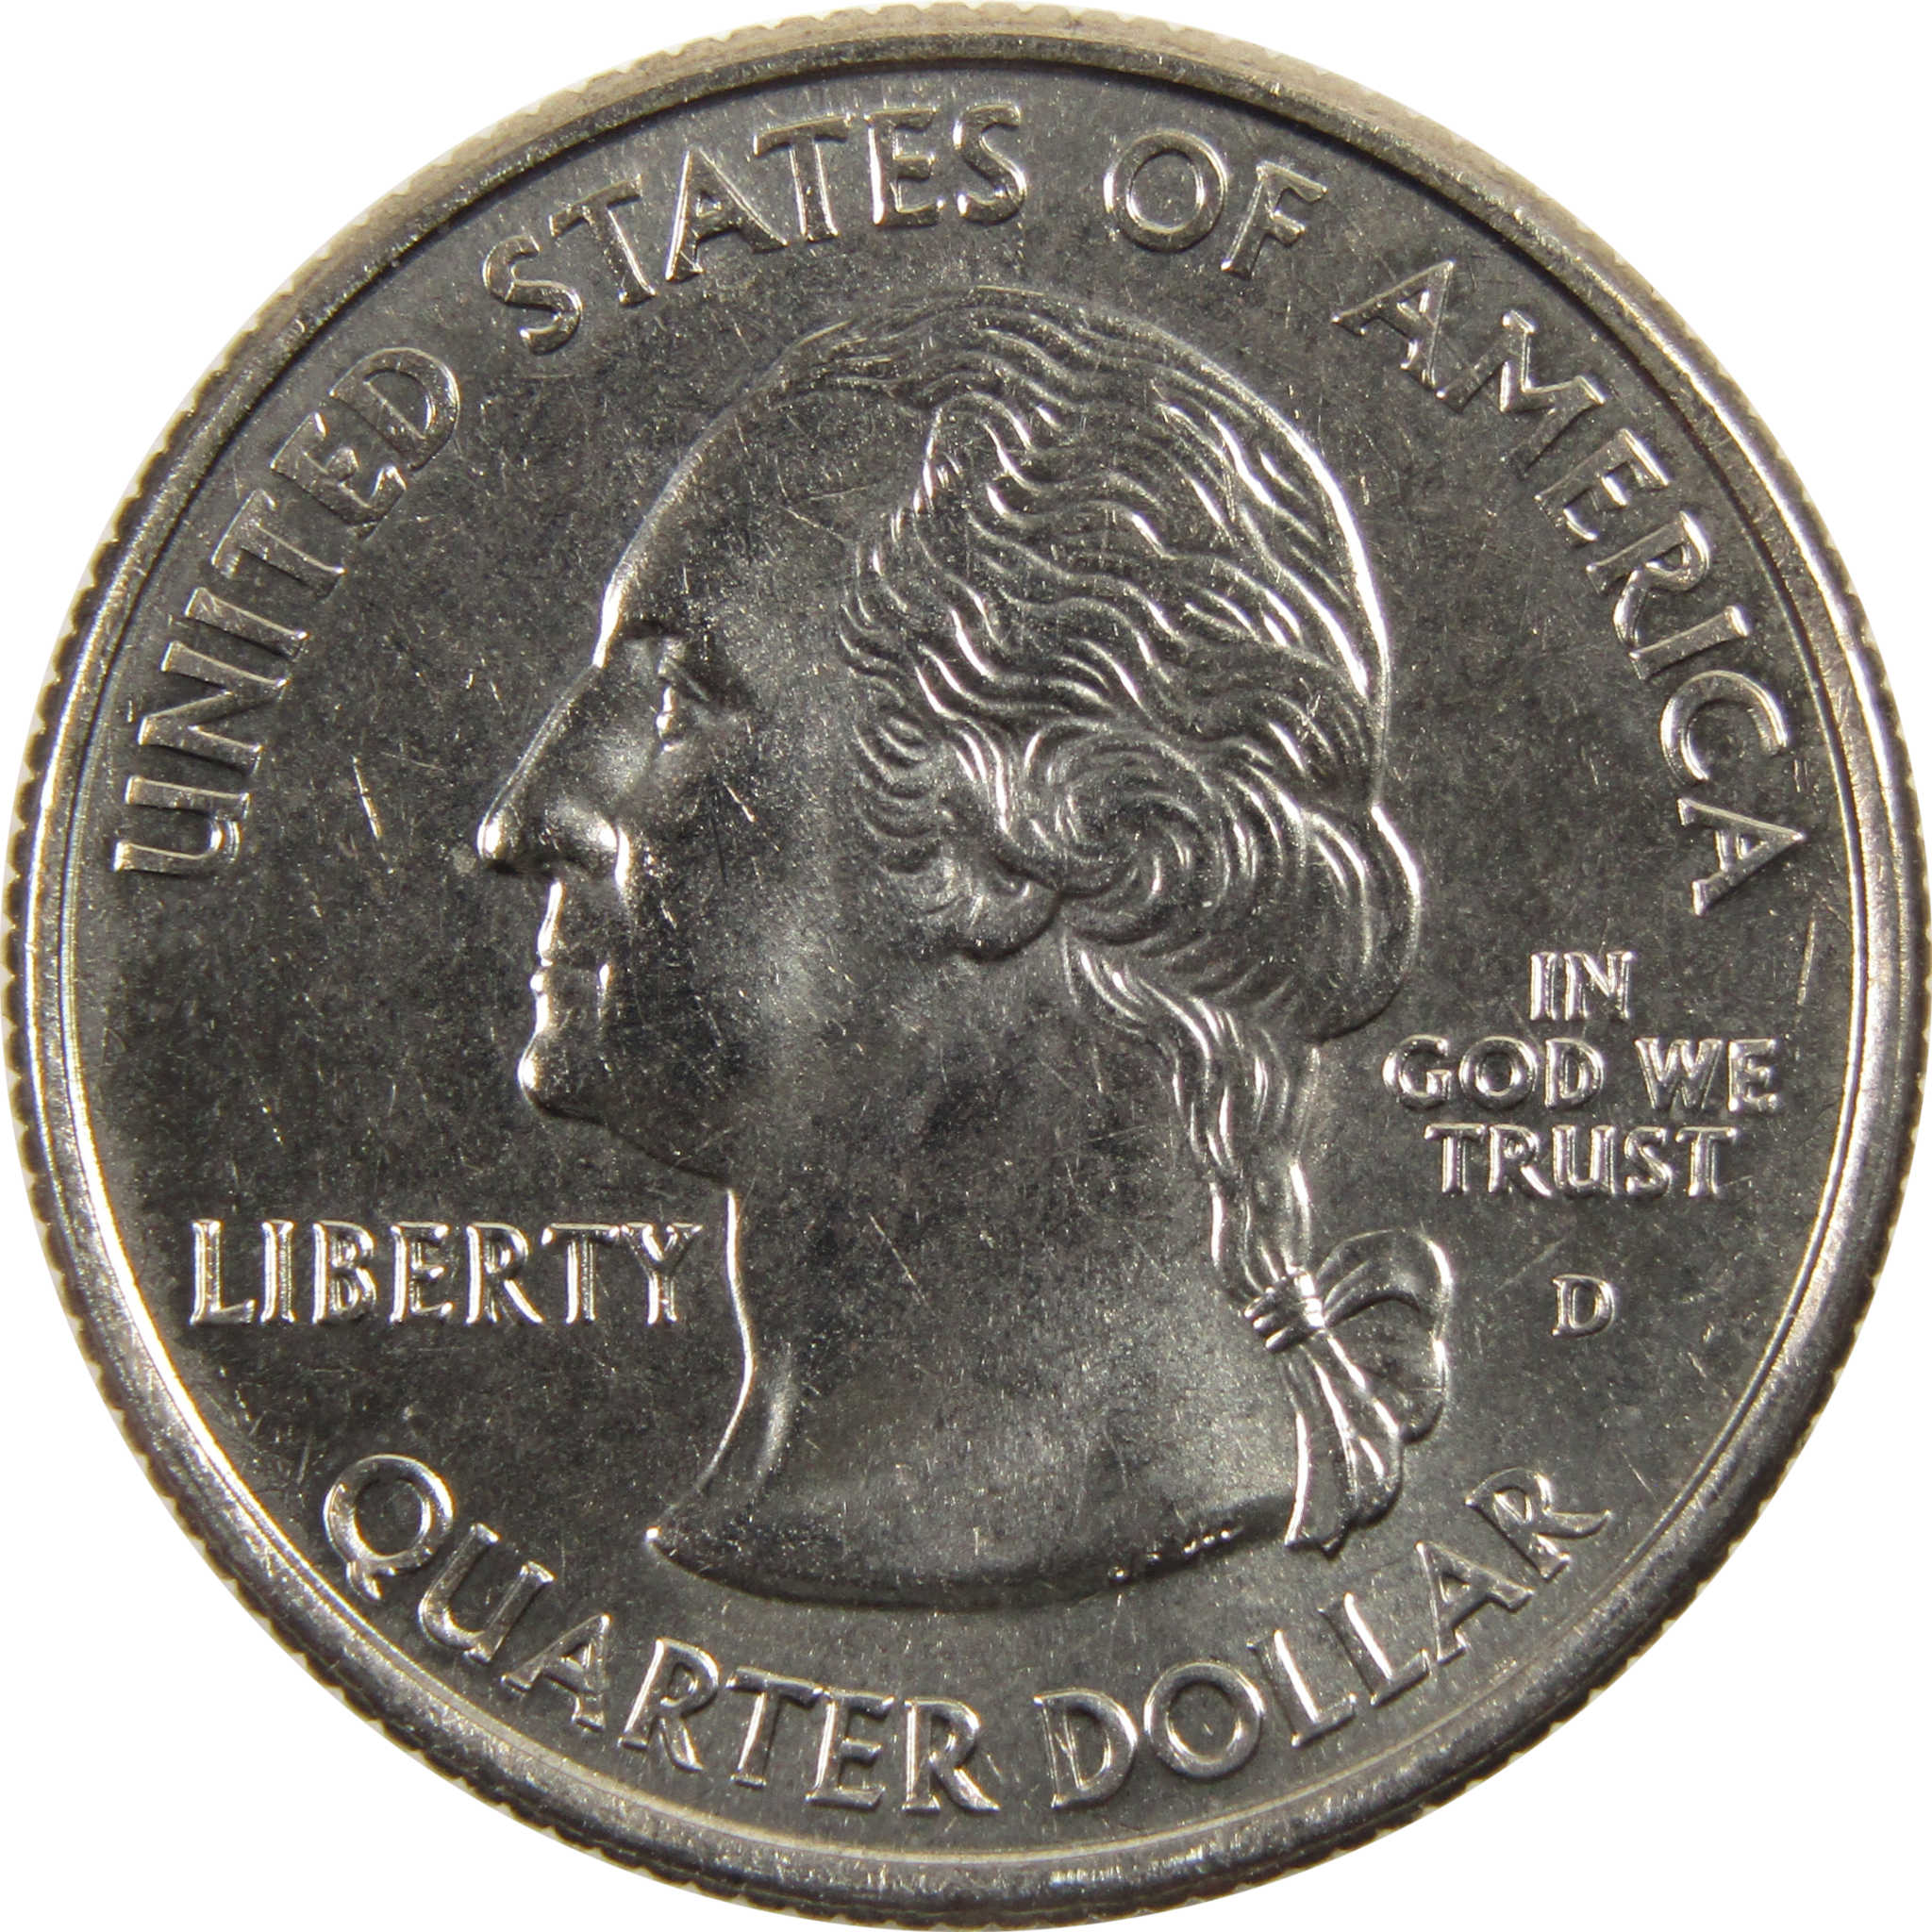 2001 D North Carolina State Quarter BU Uncirculated Clad 25c Coin